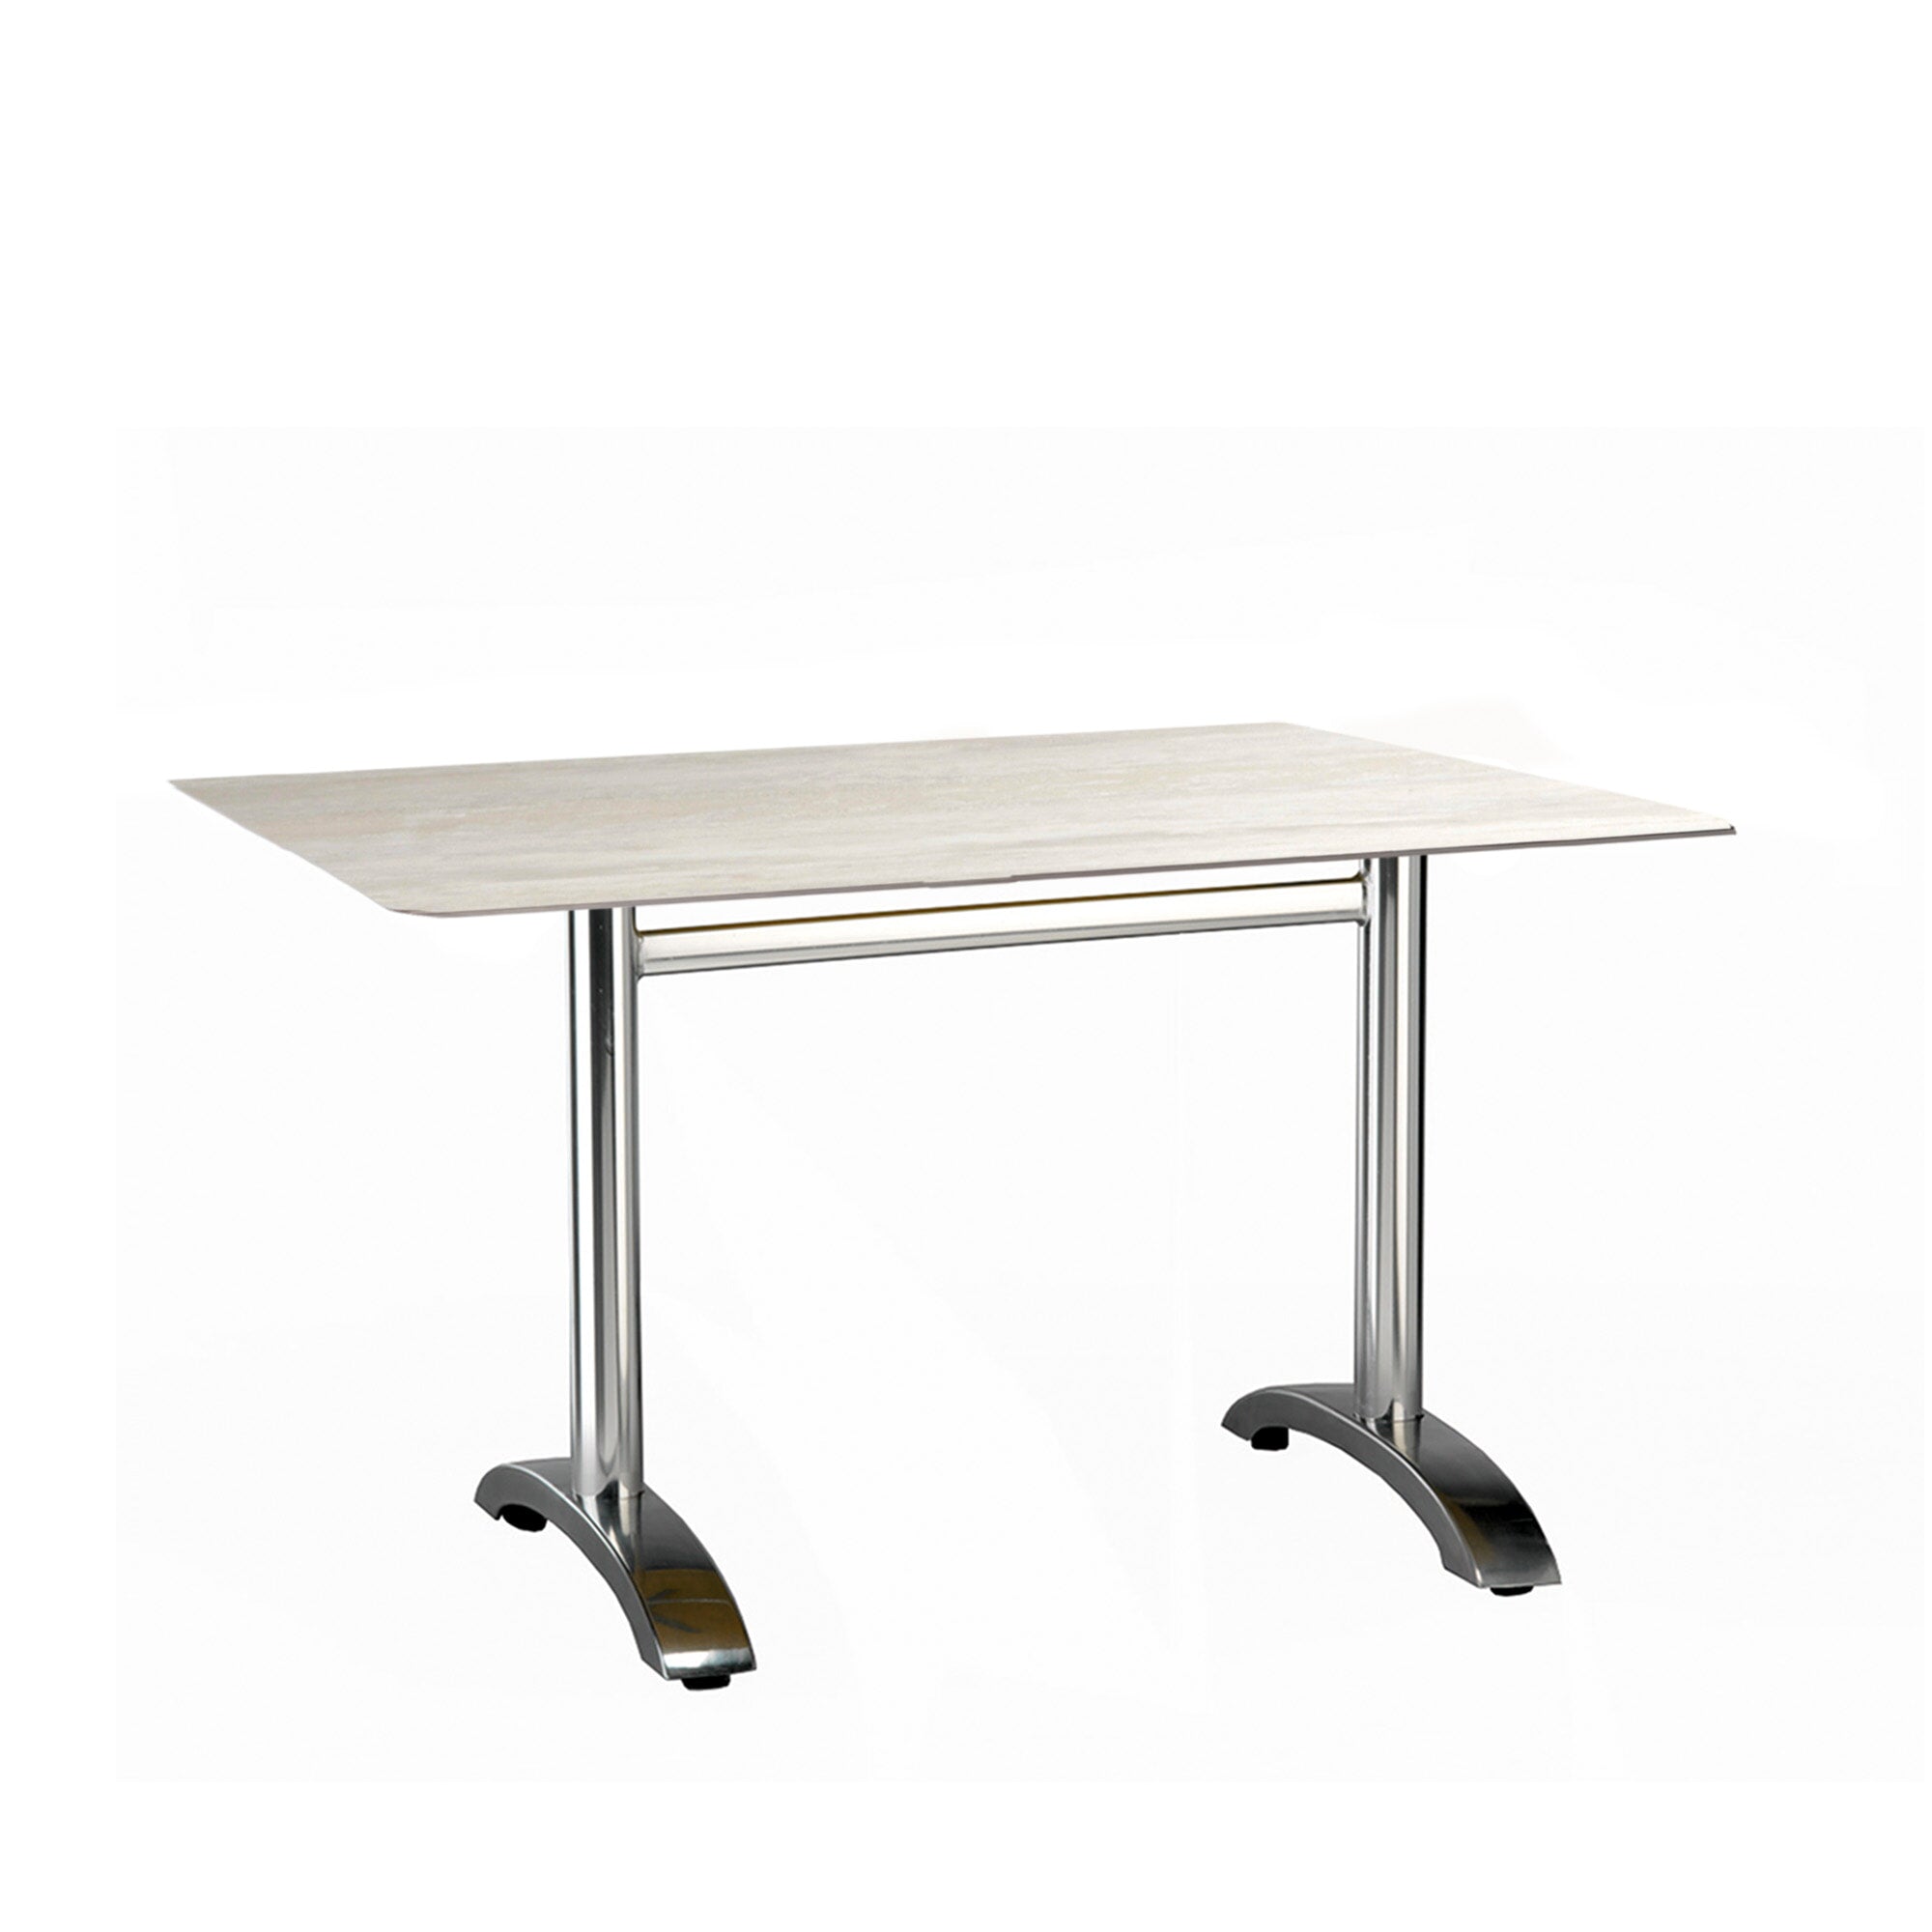 Garbar max rectangular table indoors, outdoors 120x80